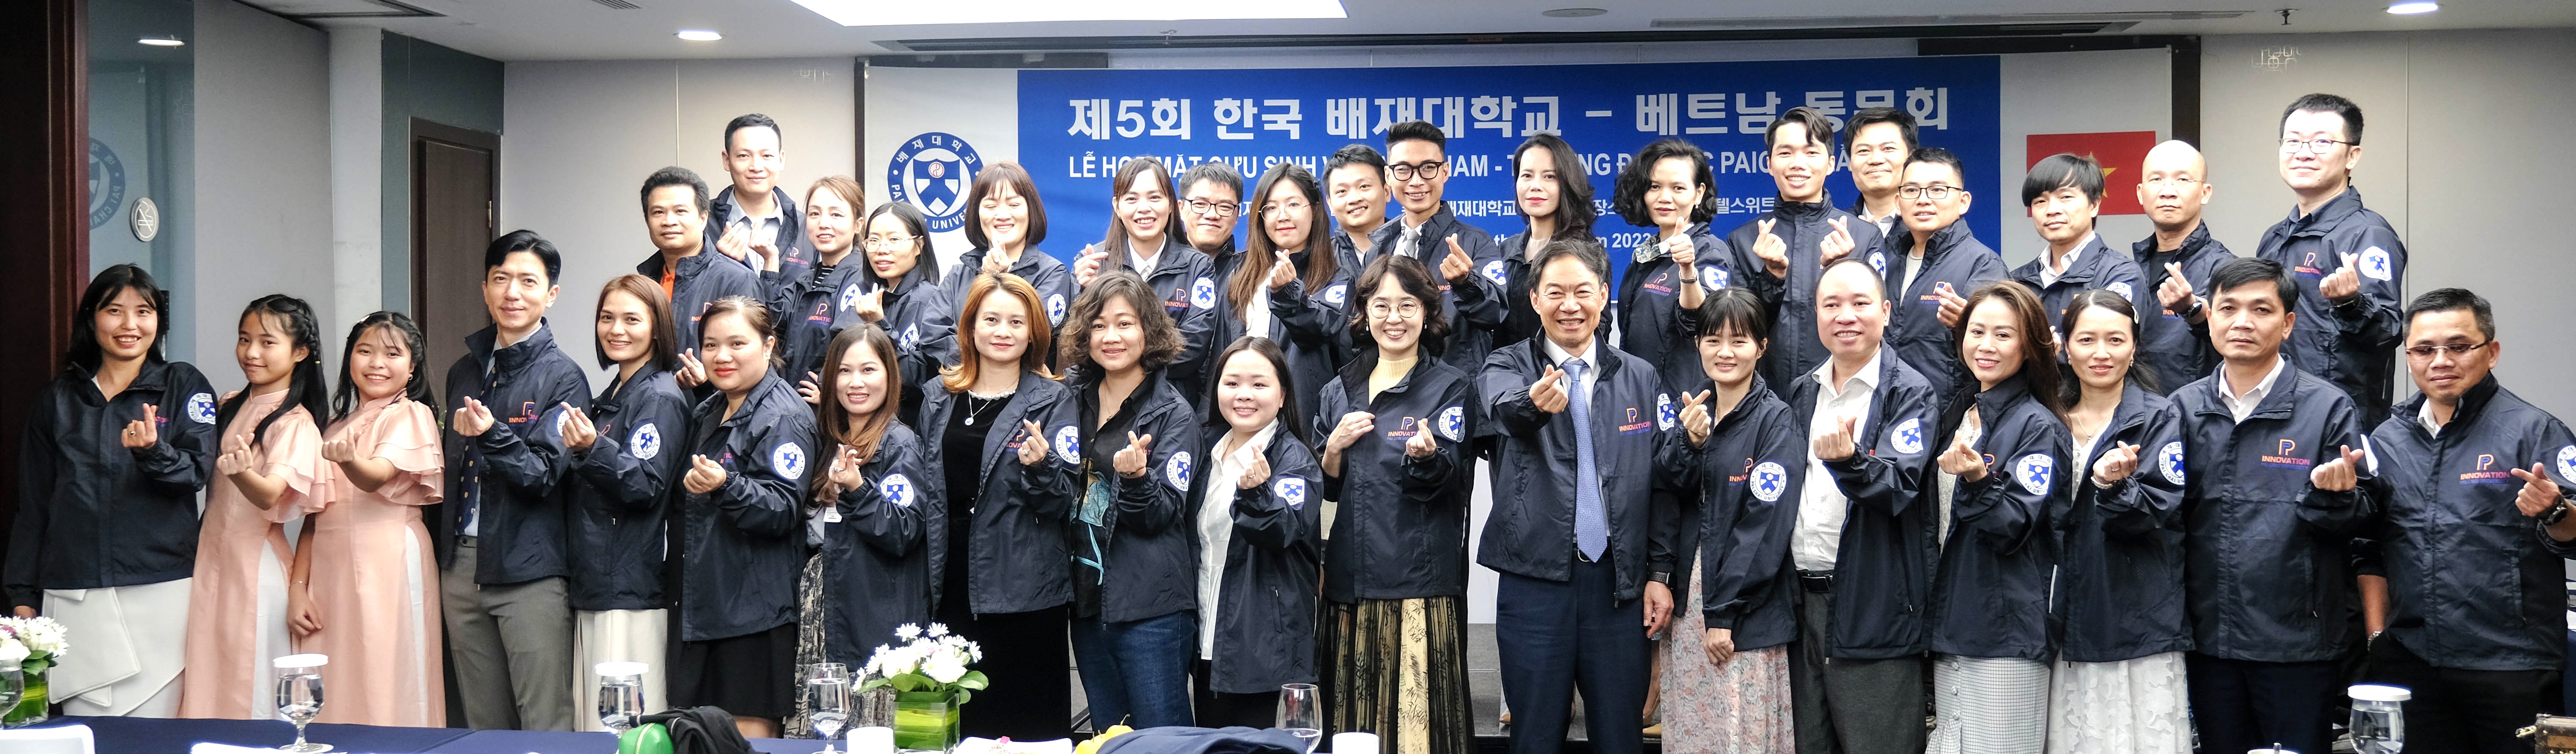 사진1. 김욱 배재대 총장, 베트남 현지에서 동문회 개최